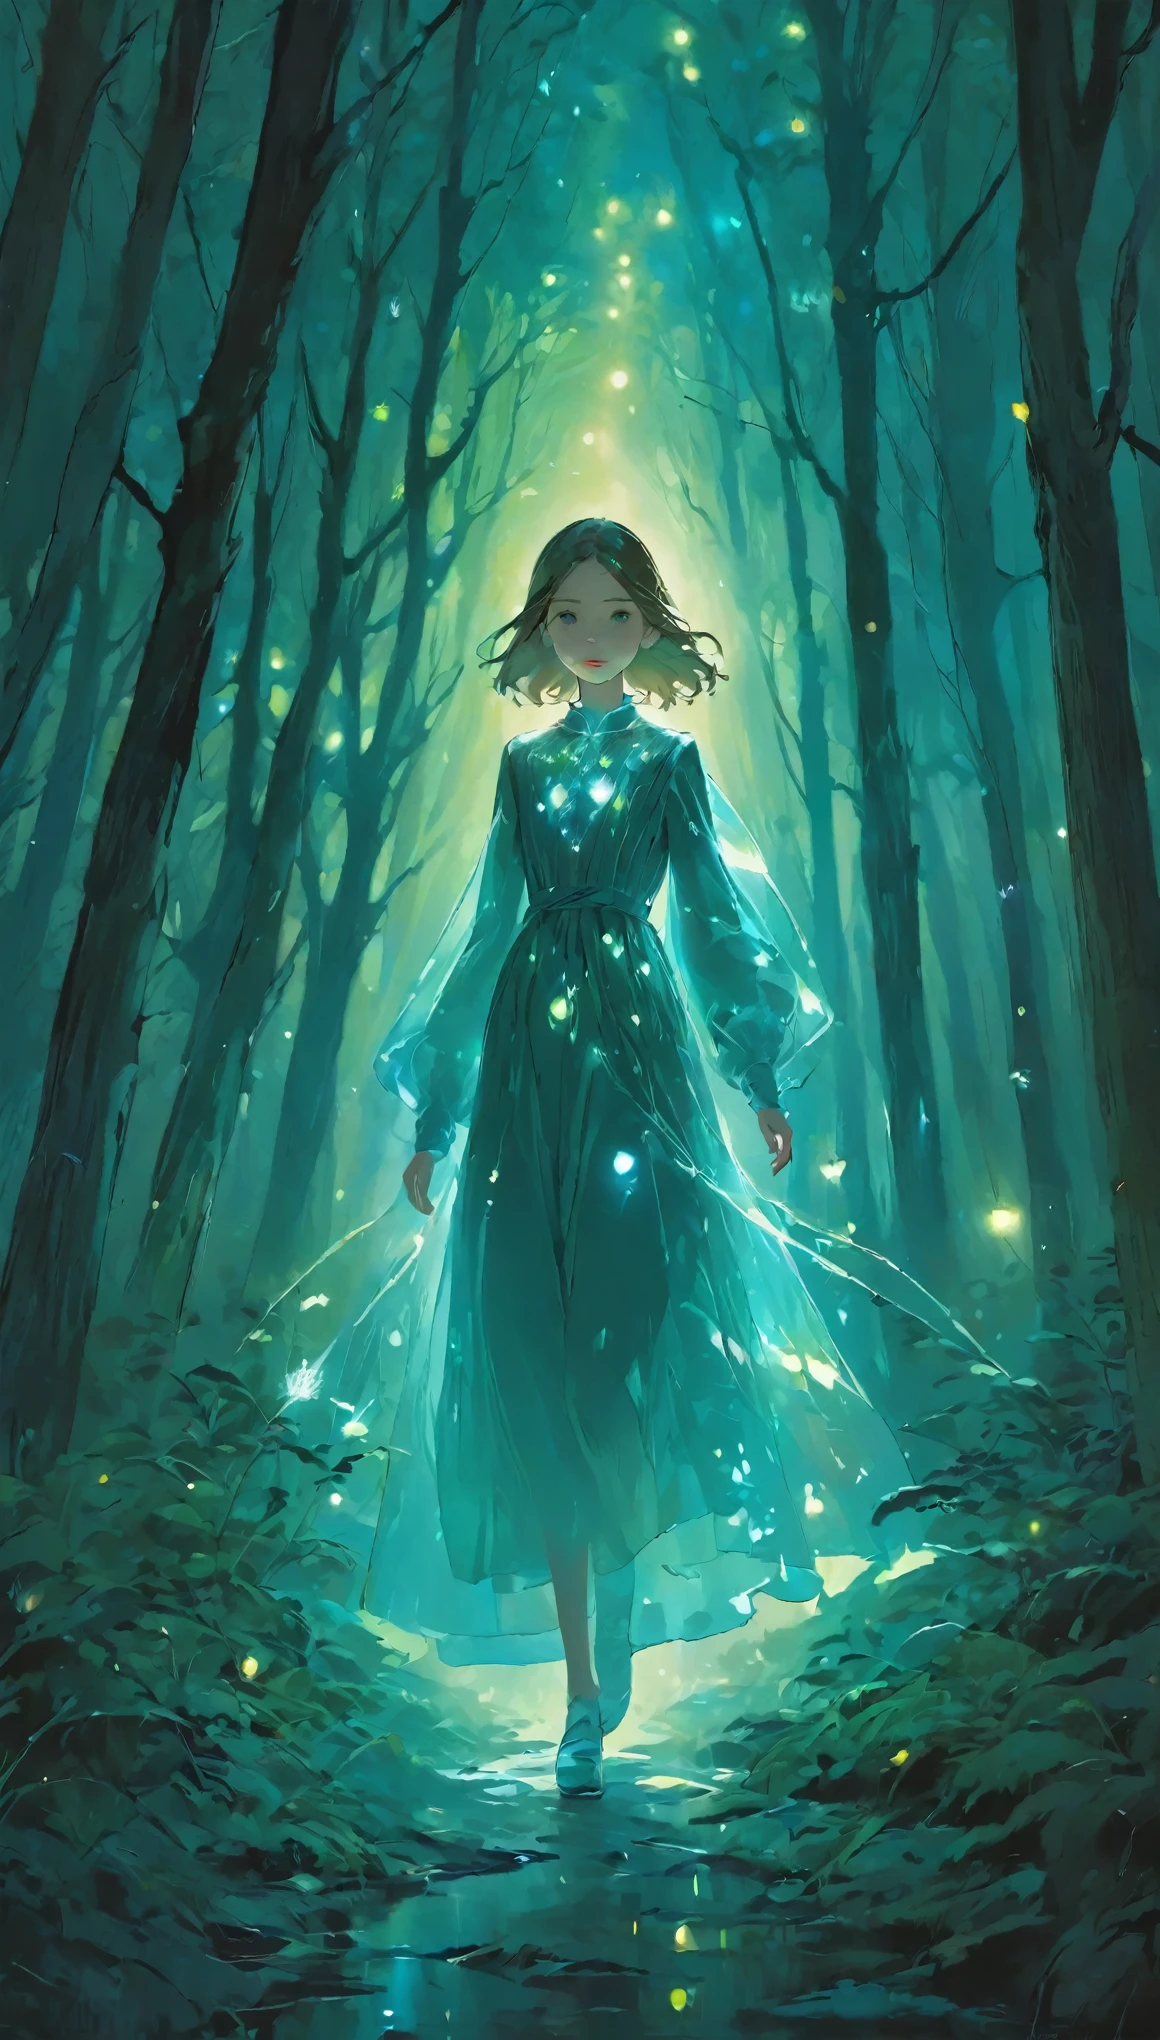 肖像画,この幻想的な絵画では,a girl with a translucent glowing 体 wanders through a mysterious forest,奇妙な光に囲まれて,アッパー_体,薄暗い背景、無機質な背景、ライトアップ